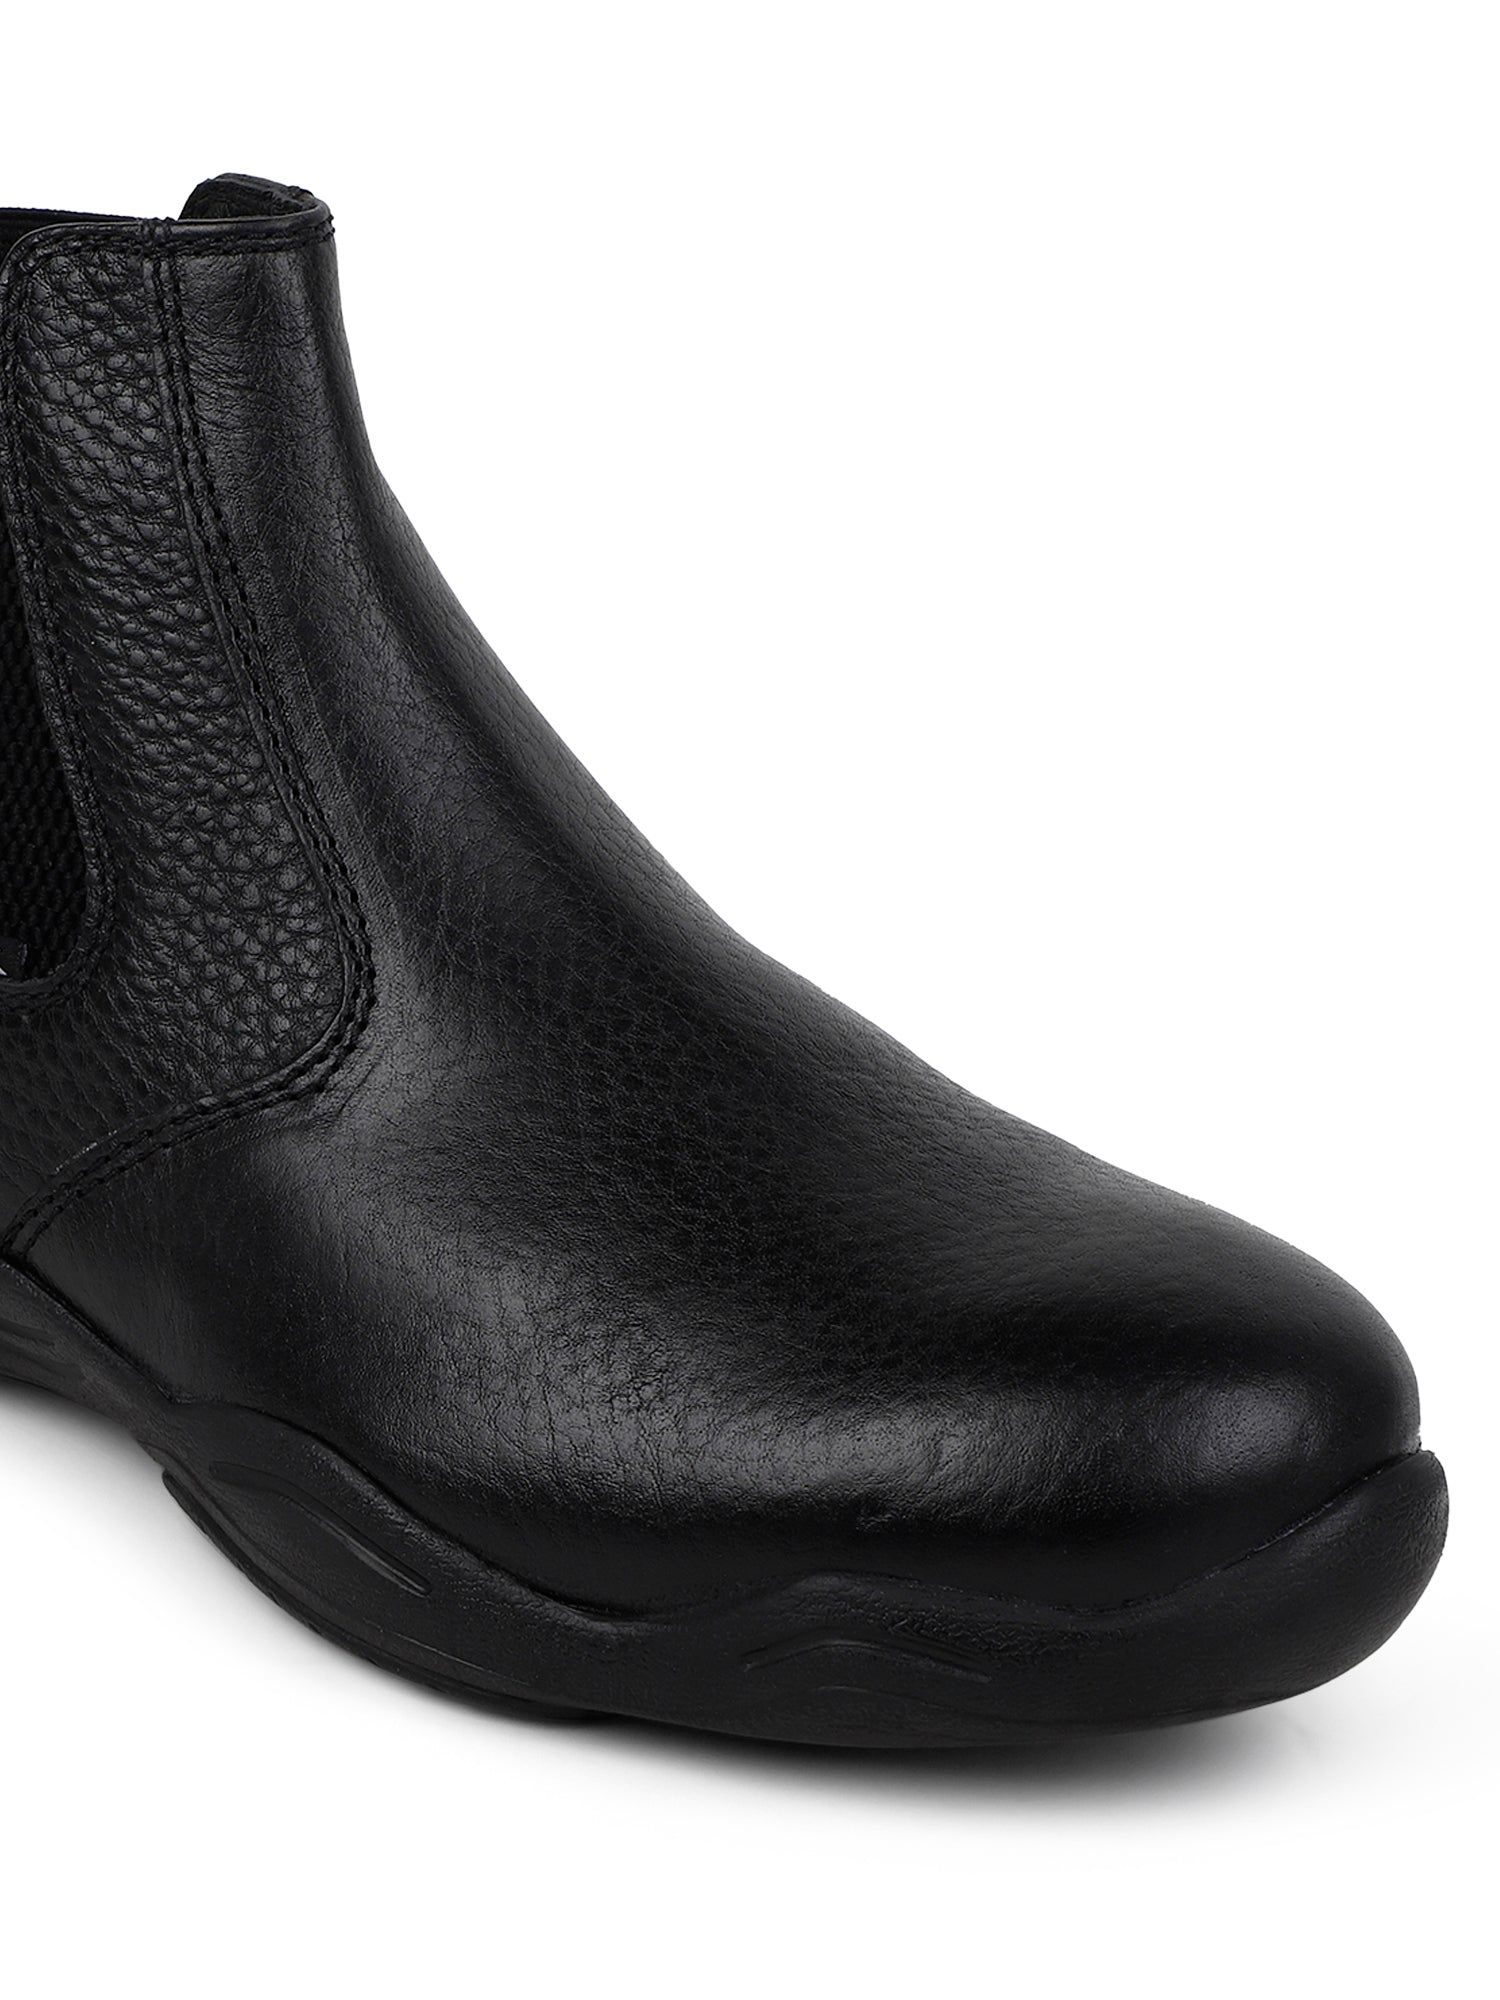 Ezok Strech black chelsea casual booots shoes